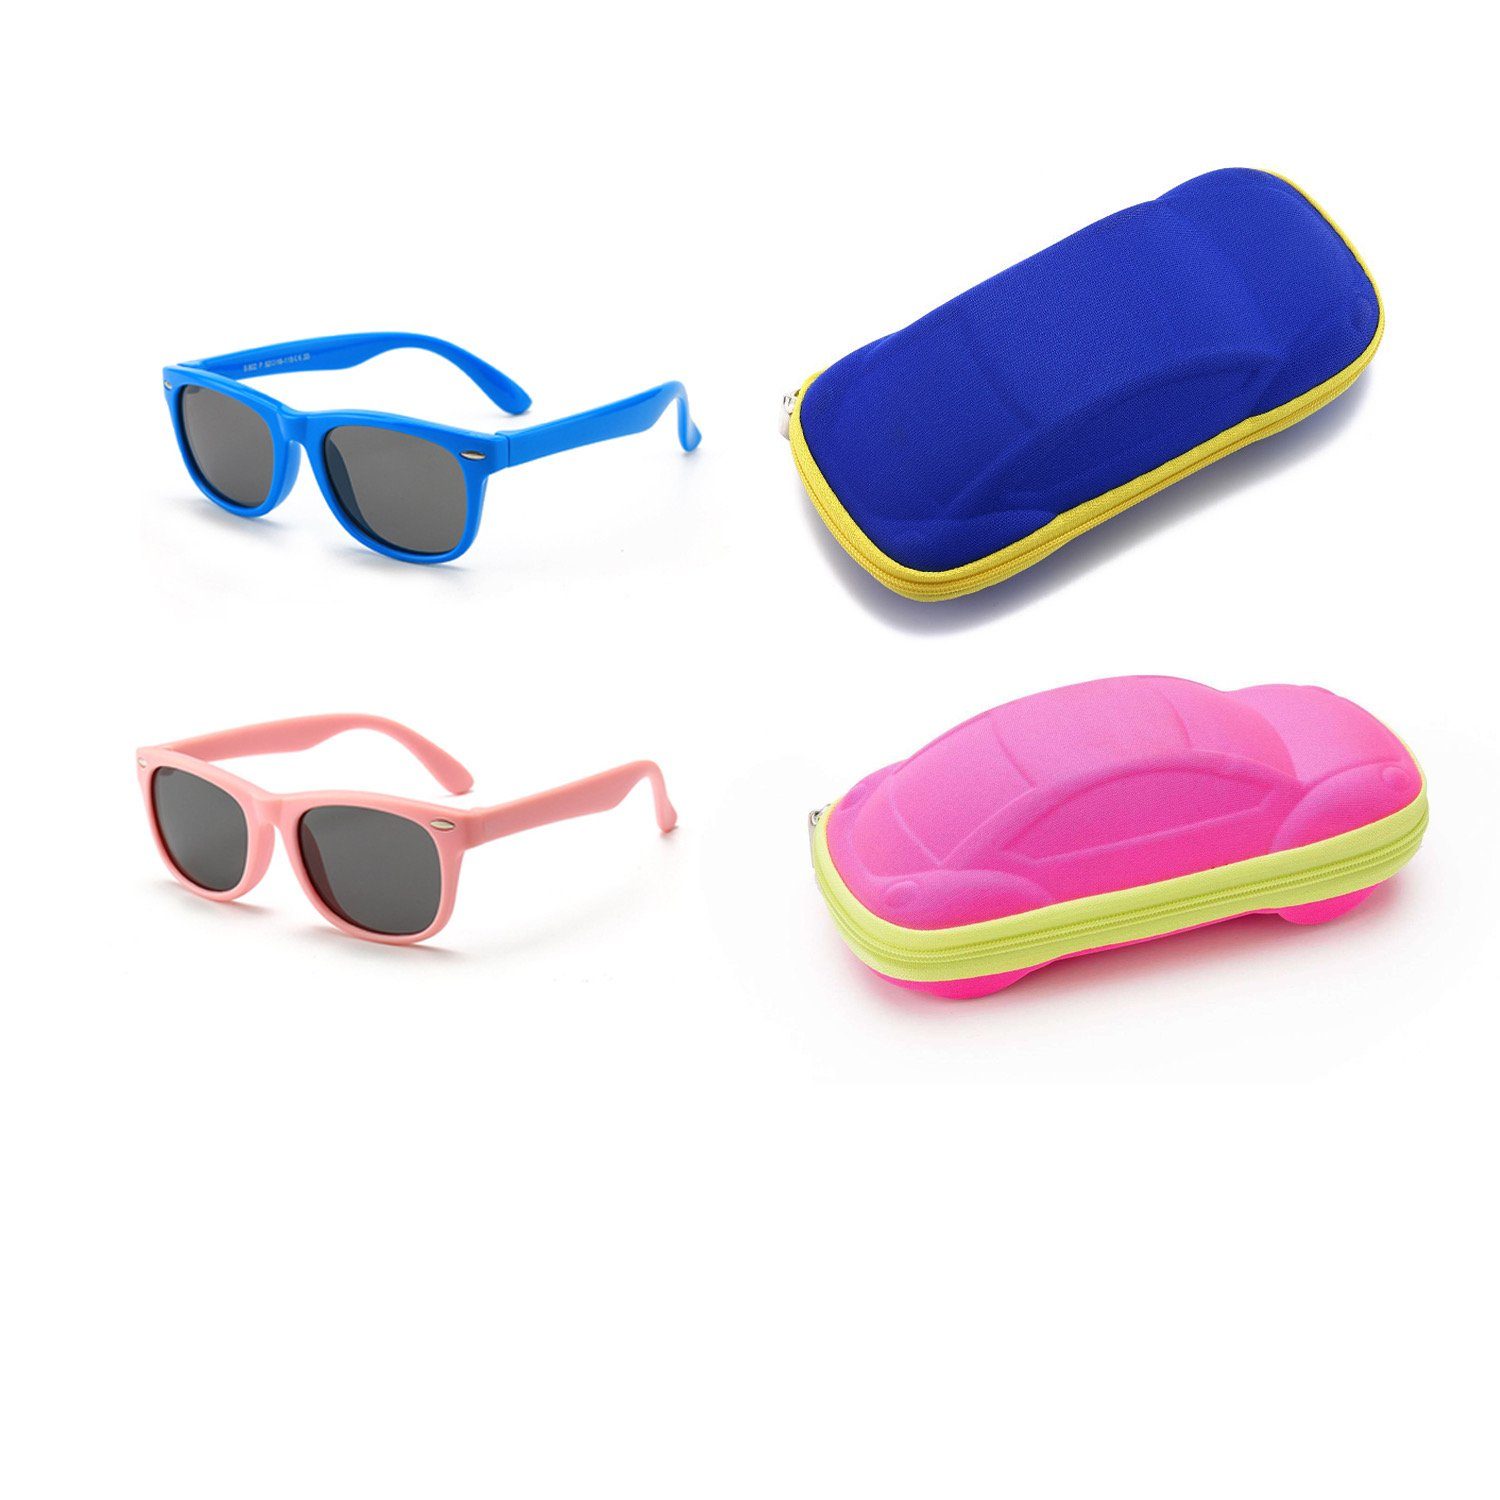 Olotos Sonnenbrille Sonnenbrille für Kinder Mädchen Jungen Gummi 100% UV400 Schutz Brille Blau+Rosa mit Brillenetui